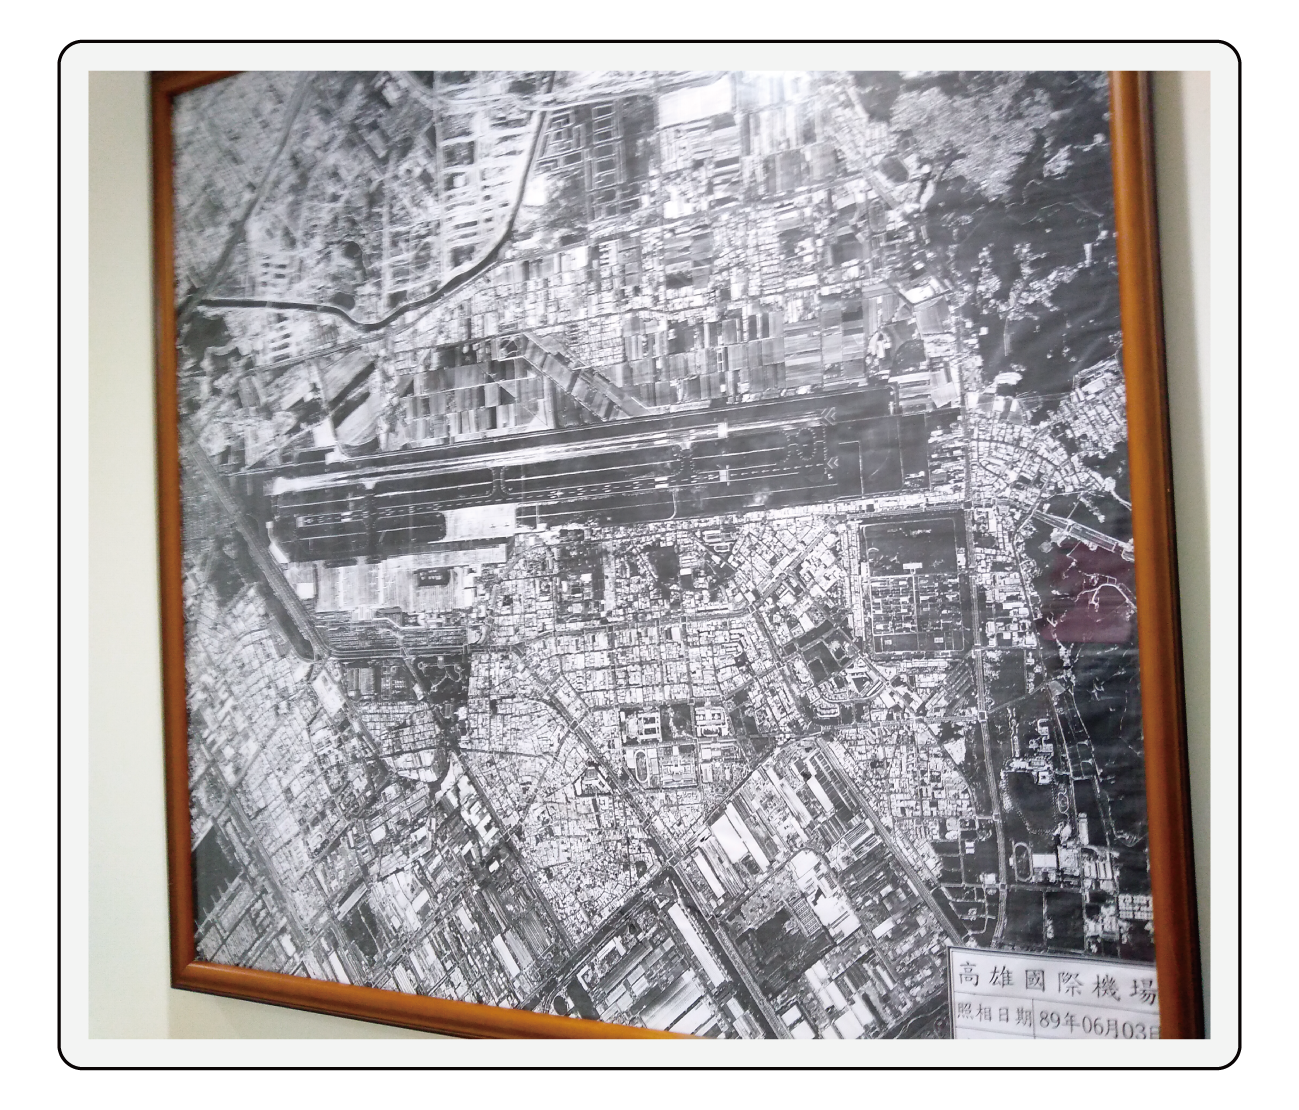 圖片說明：檔案庫房入口牆面銜掛     高雄機場基地圖檔及當時空拍圖，     隱喻其庫房有其重要檔案之氛圍